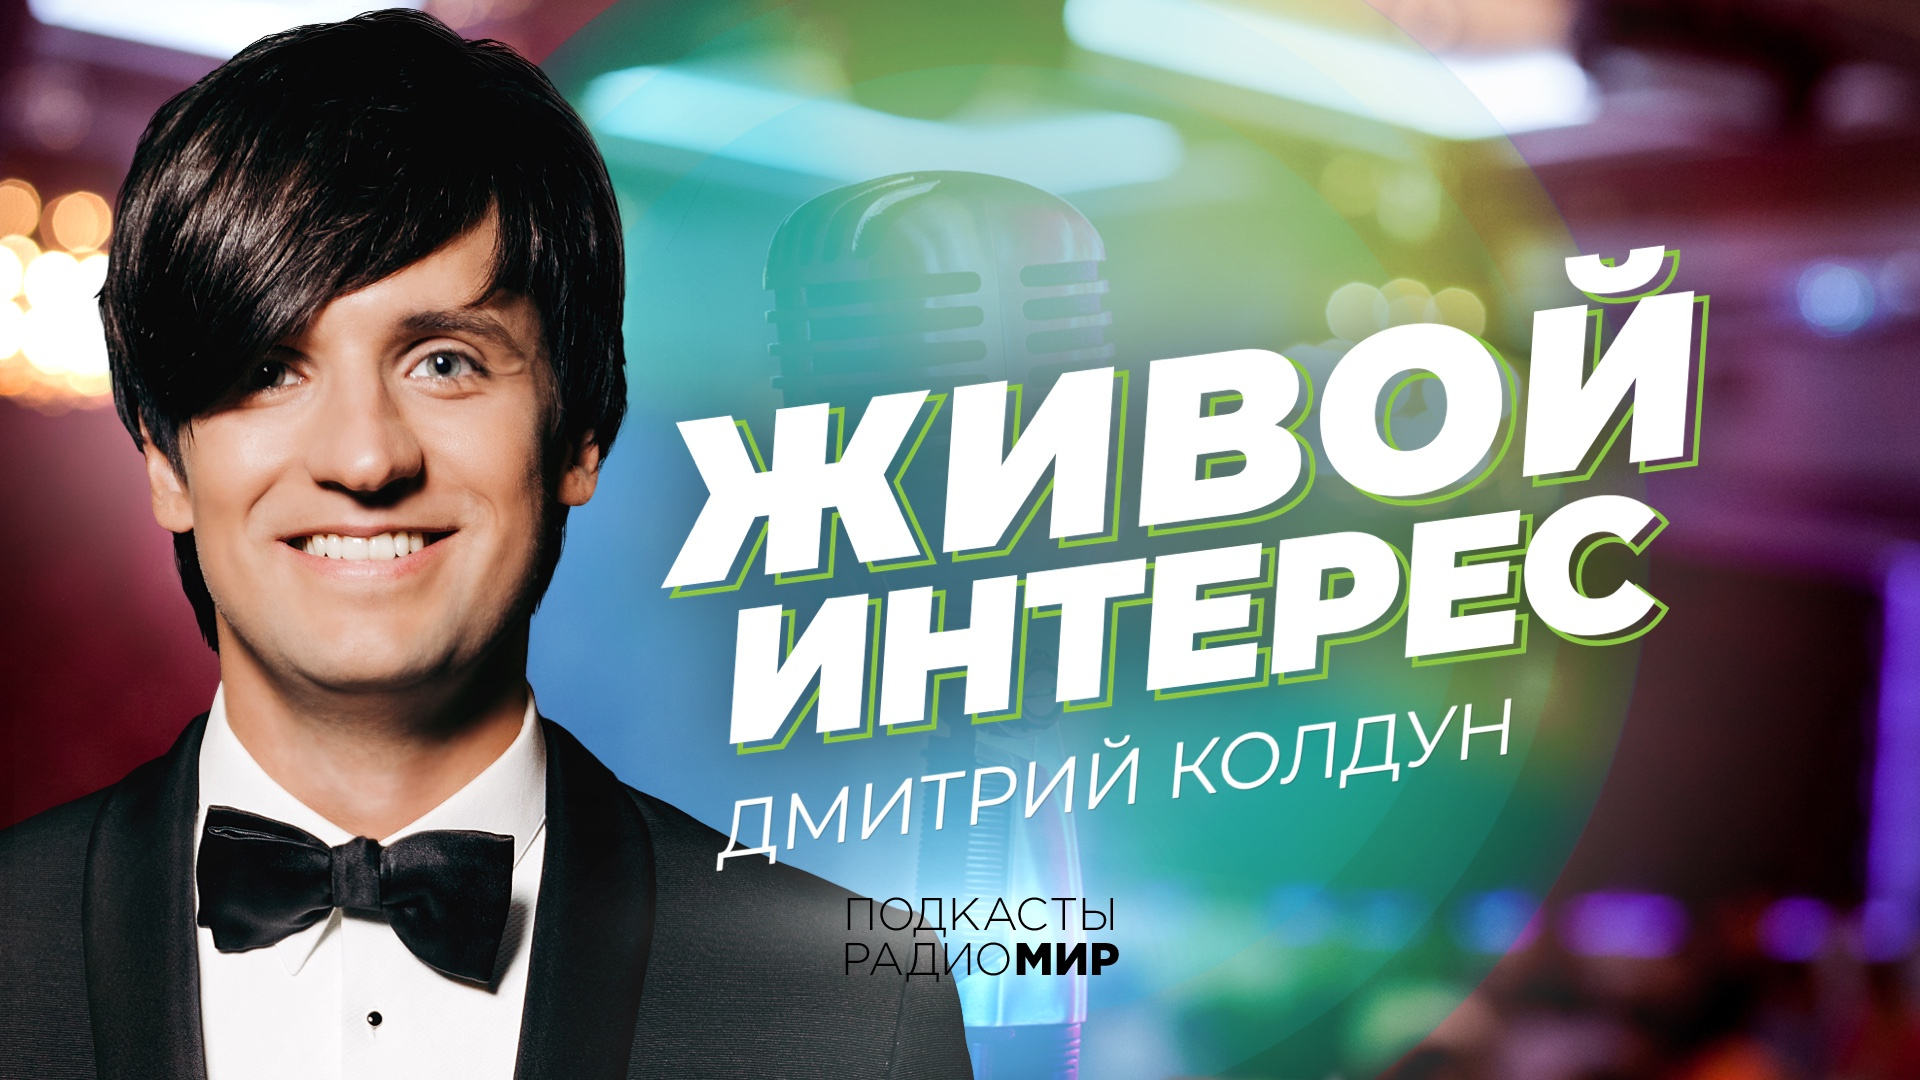 Дмитрий Колдун на Радио «МИР»: о роли матери в его карьере, секрете семейного счастья и воспитании детей